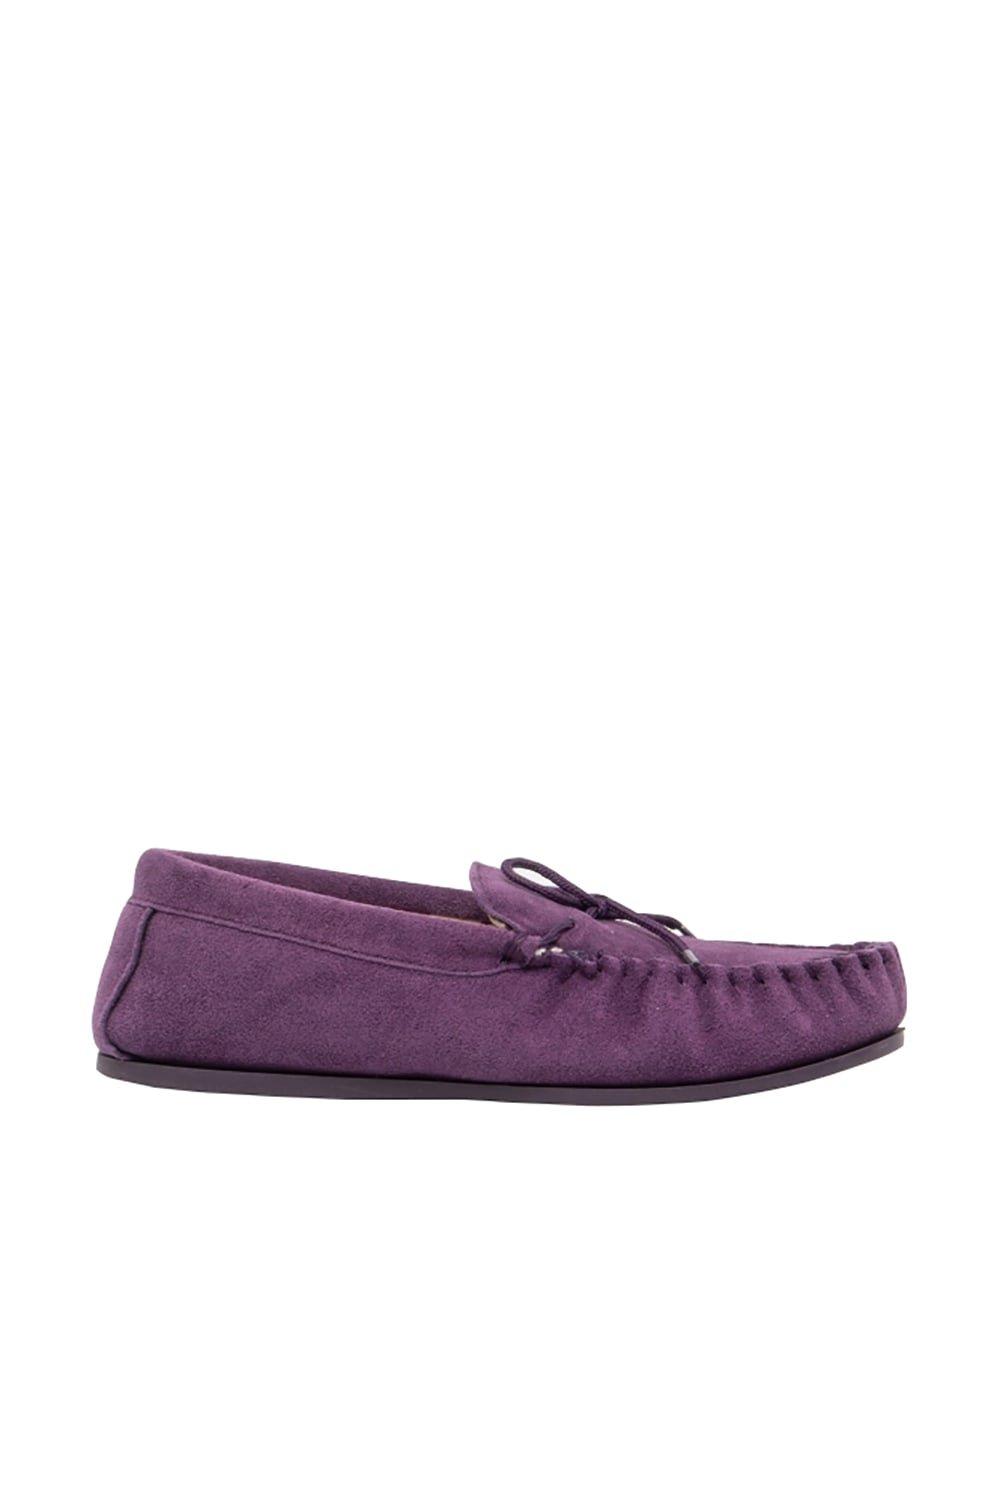 Тапочки без шнуровки Lily Mokkers, фиолетовый тапочки без шнуровки lily mokkers красный